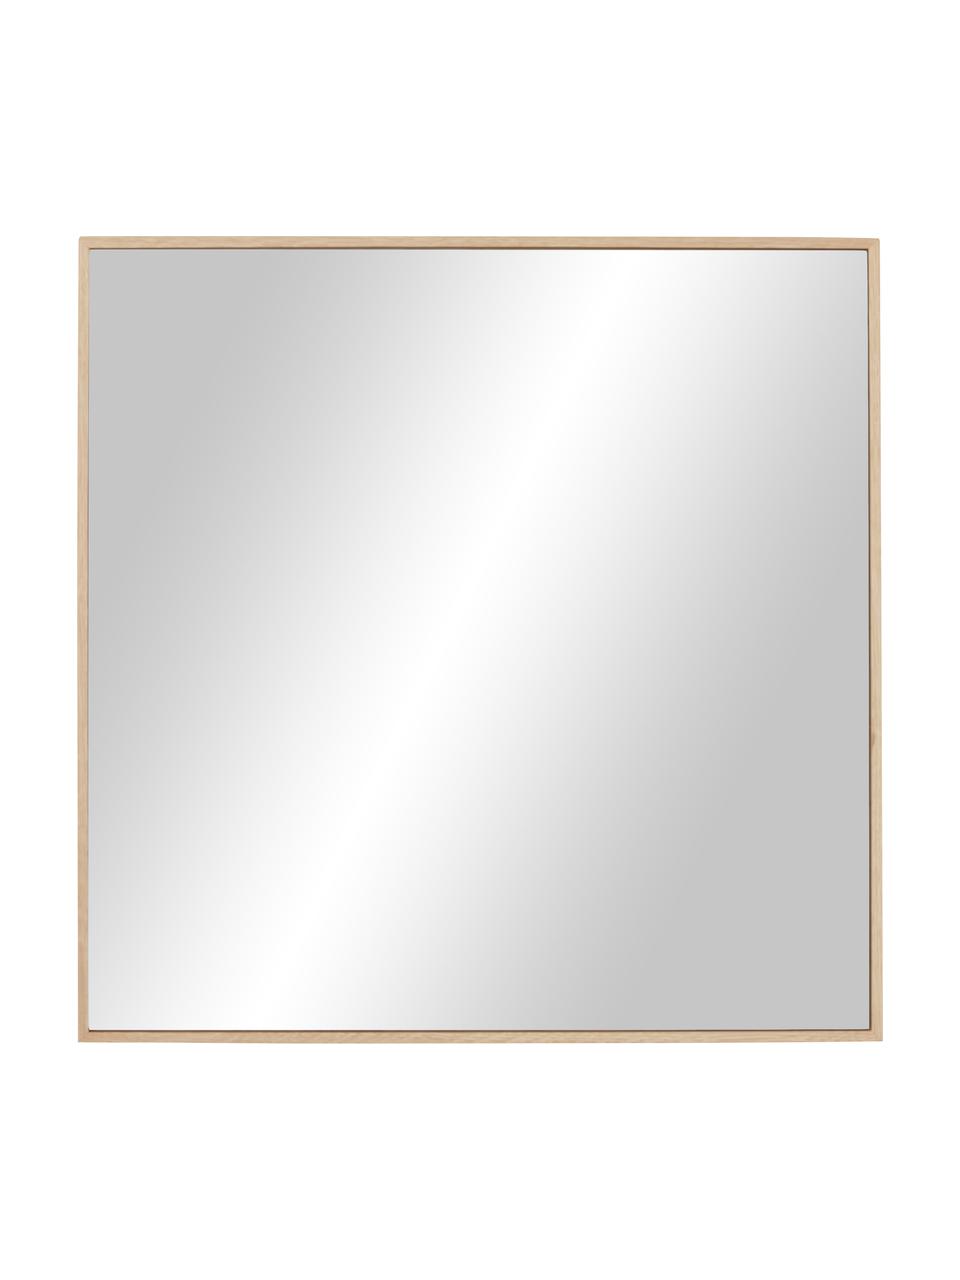 Eckiger Wandspiegel Avery mit braunem Eichenholzrahmen, Rahmen: Eichenholz, FSC-zertifizi, Spiegelfläche: Spiegelglas, Eichenholz, B 55 x H 55 cm